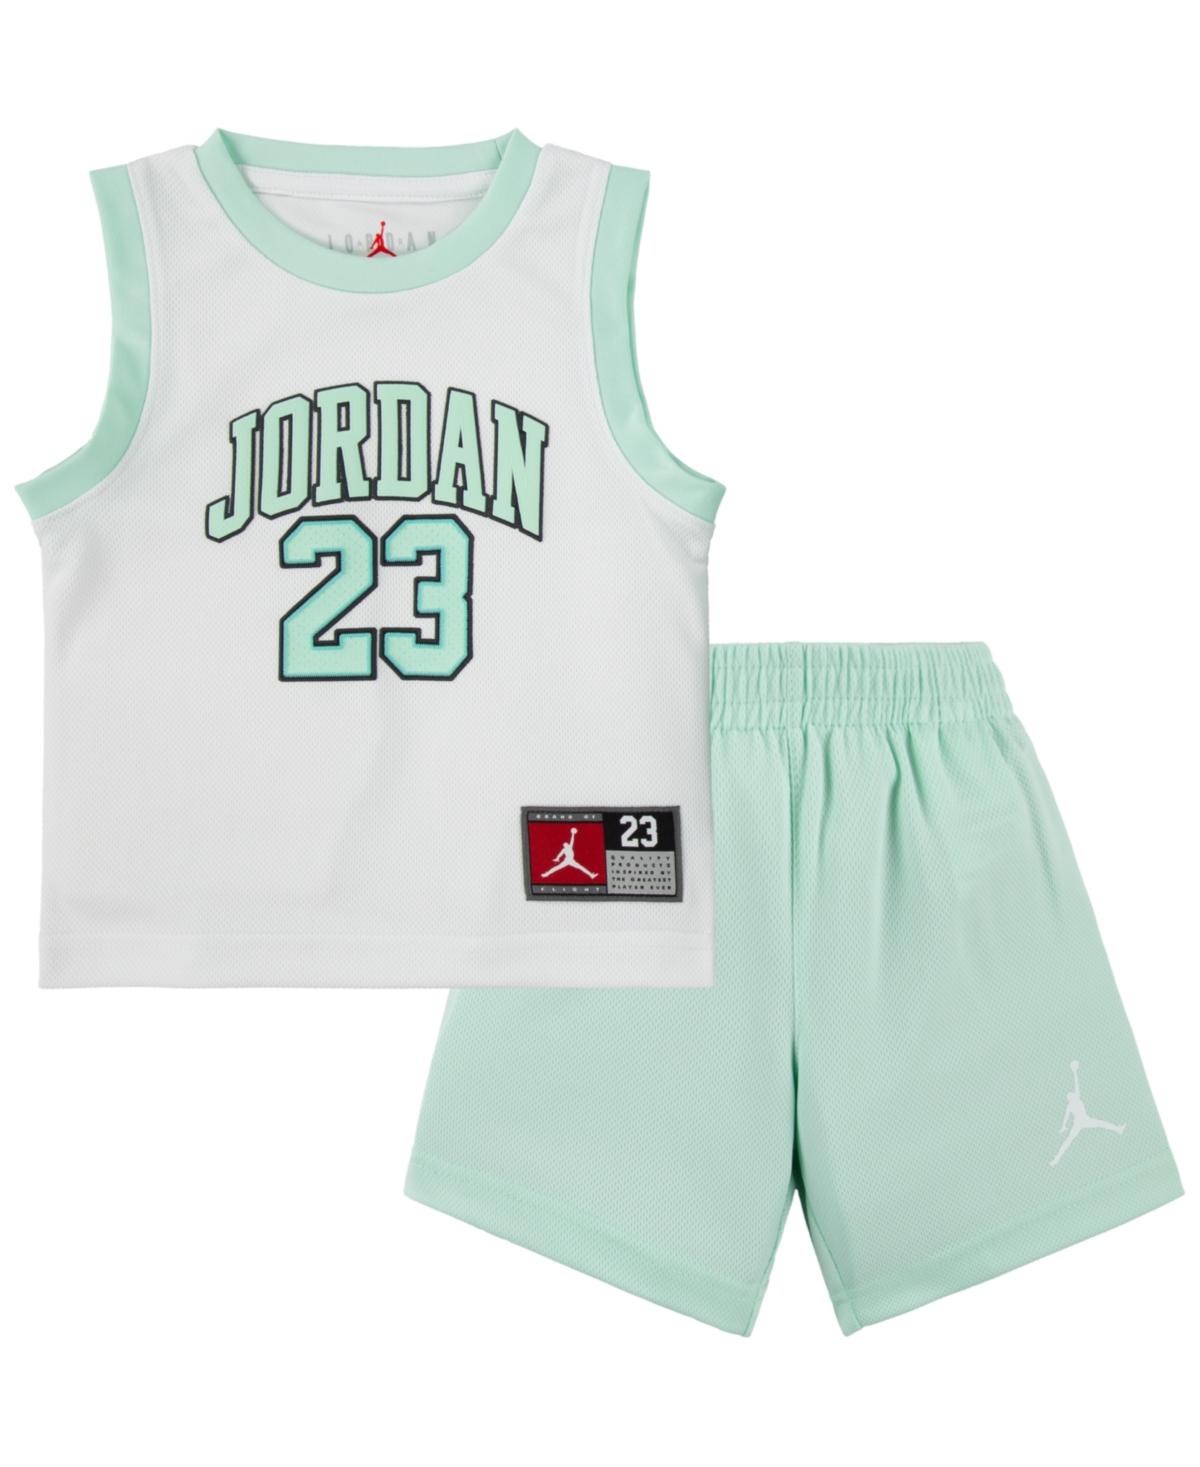 Jordan Kids' Toddler Boys 23 Jersey Set In Green